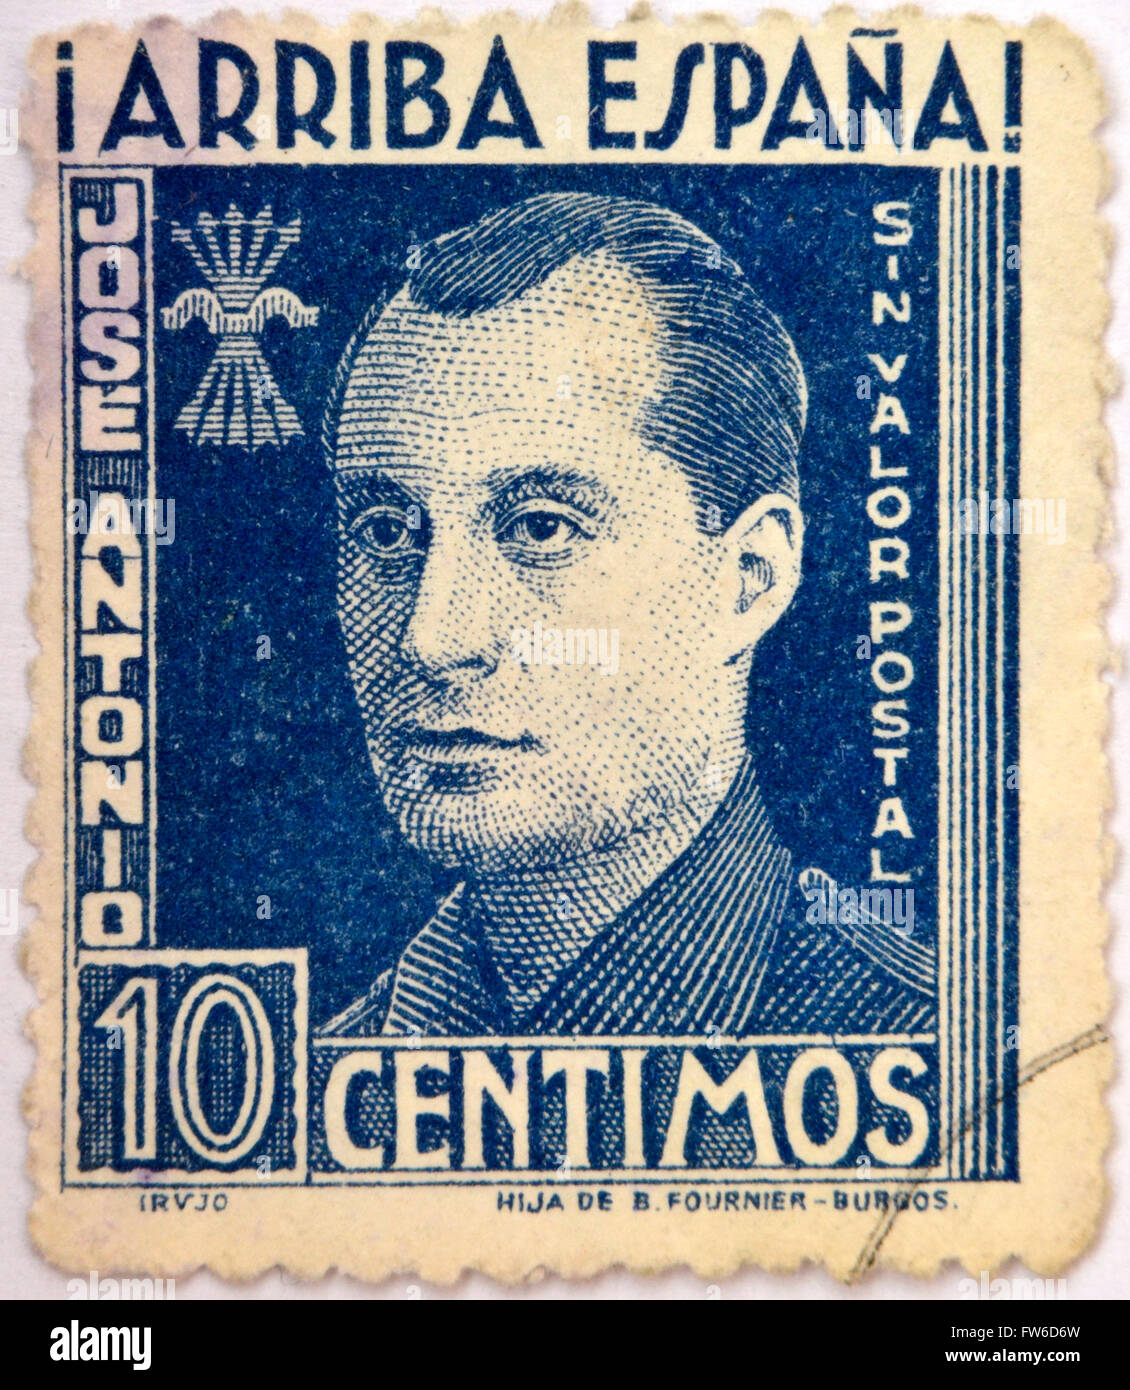 SPAIN - CIRCA 1940: A stamp printed in Spain shows Jose Antonio Primo de Rivera, circa 1940 Stock Photo